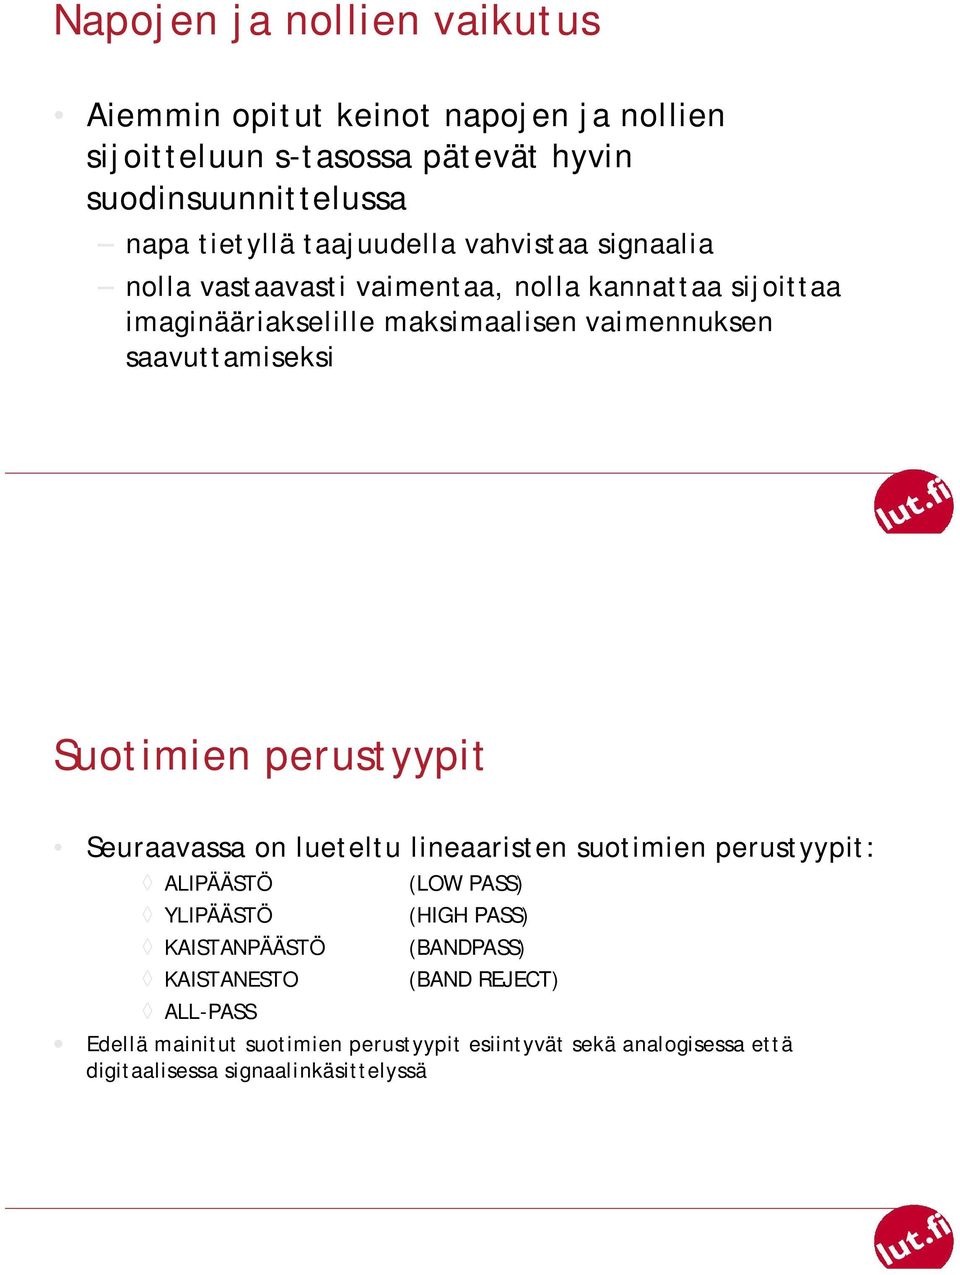 saavuttamiseksi Suotimien perustyypit Seuraavassa on lueteltu lineaaristen suotimien perustyypit: ALIPÄÄSTÖ YLIPÄÄSTÖ KAISTANPÄÄSTÖ KAISTANESTO